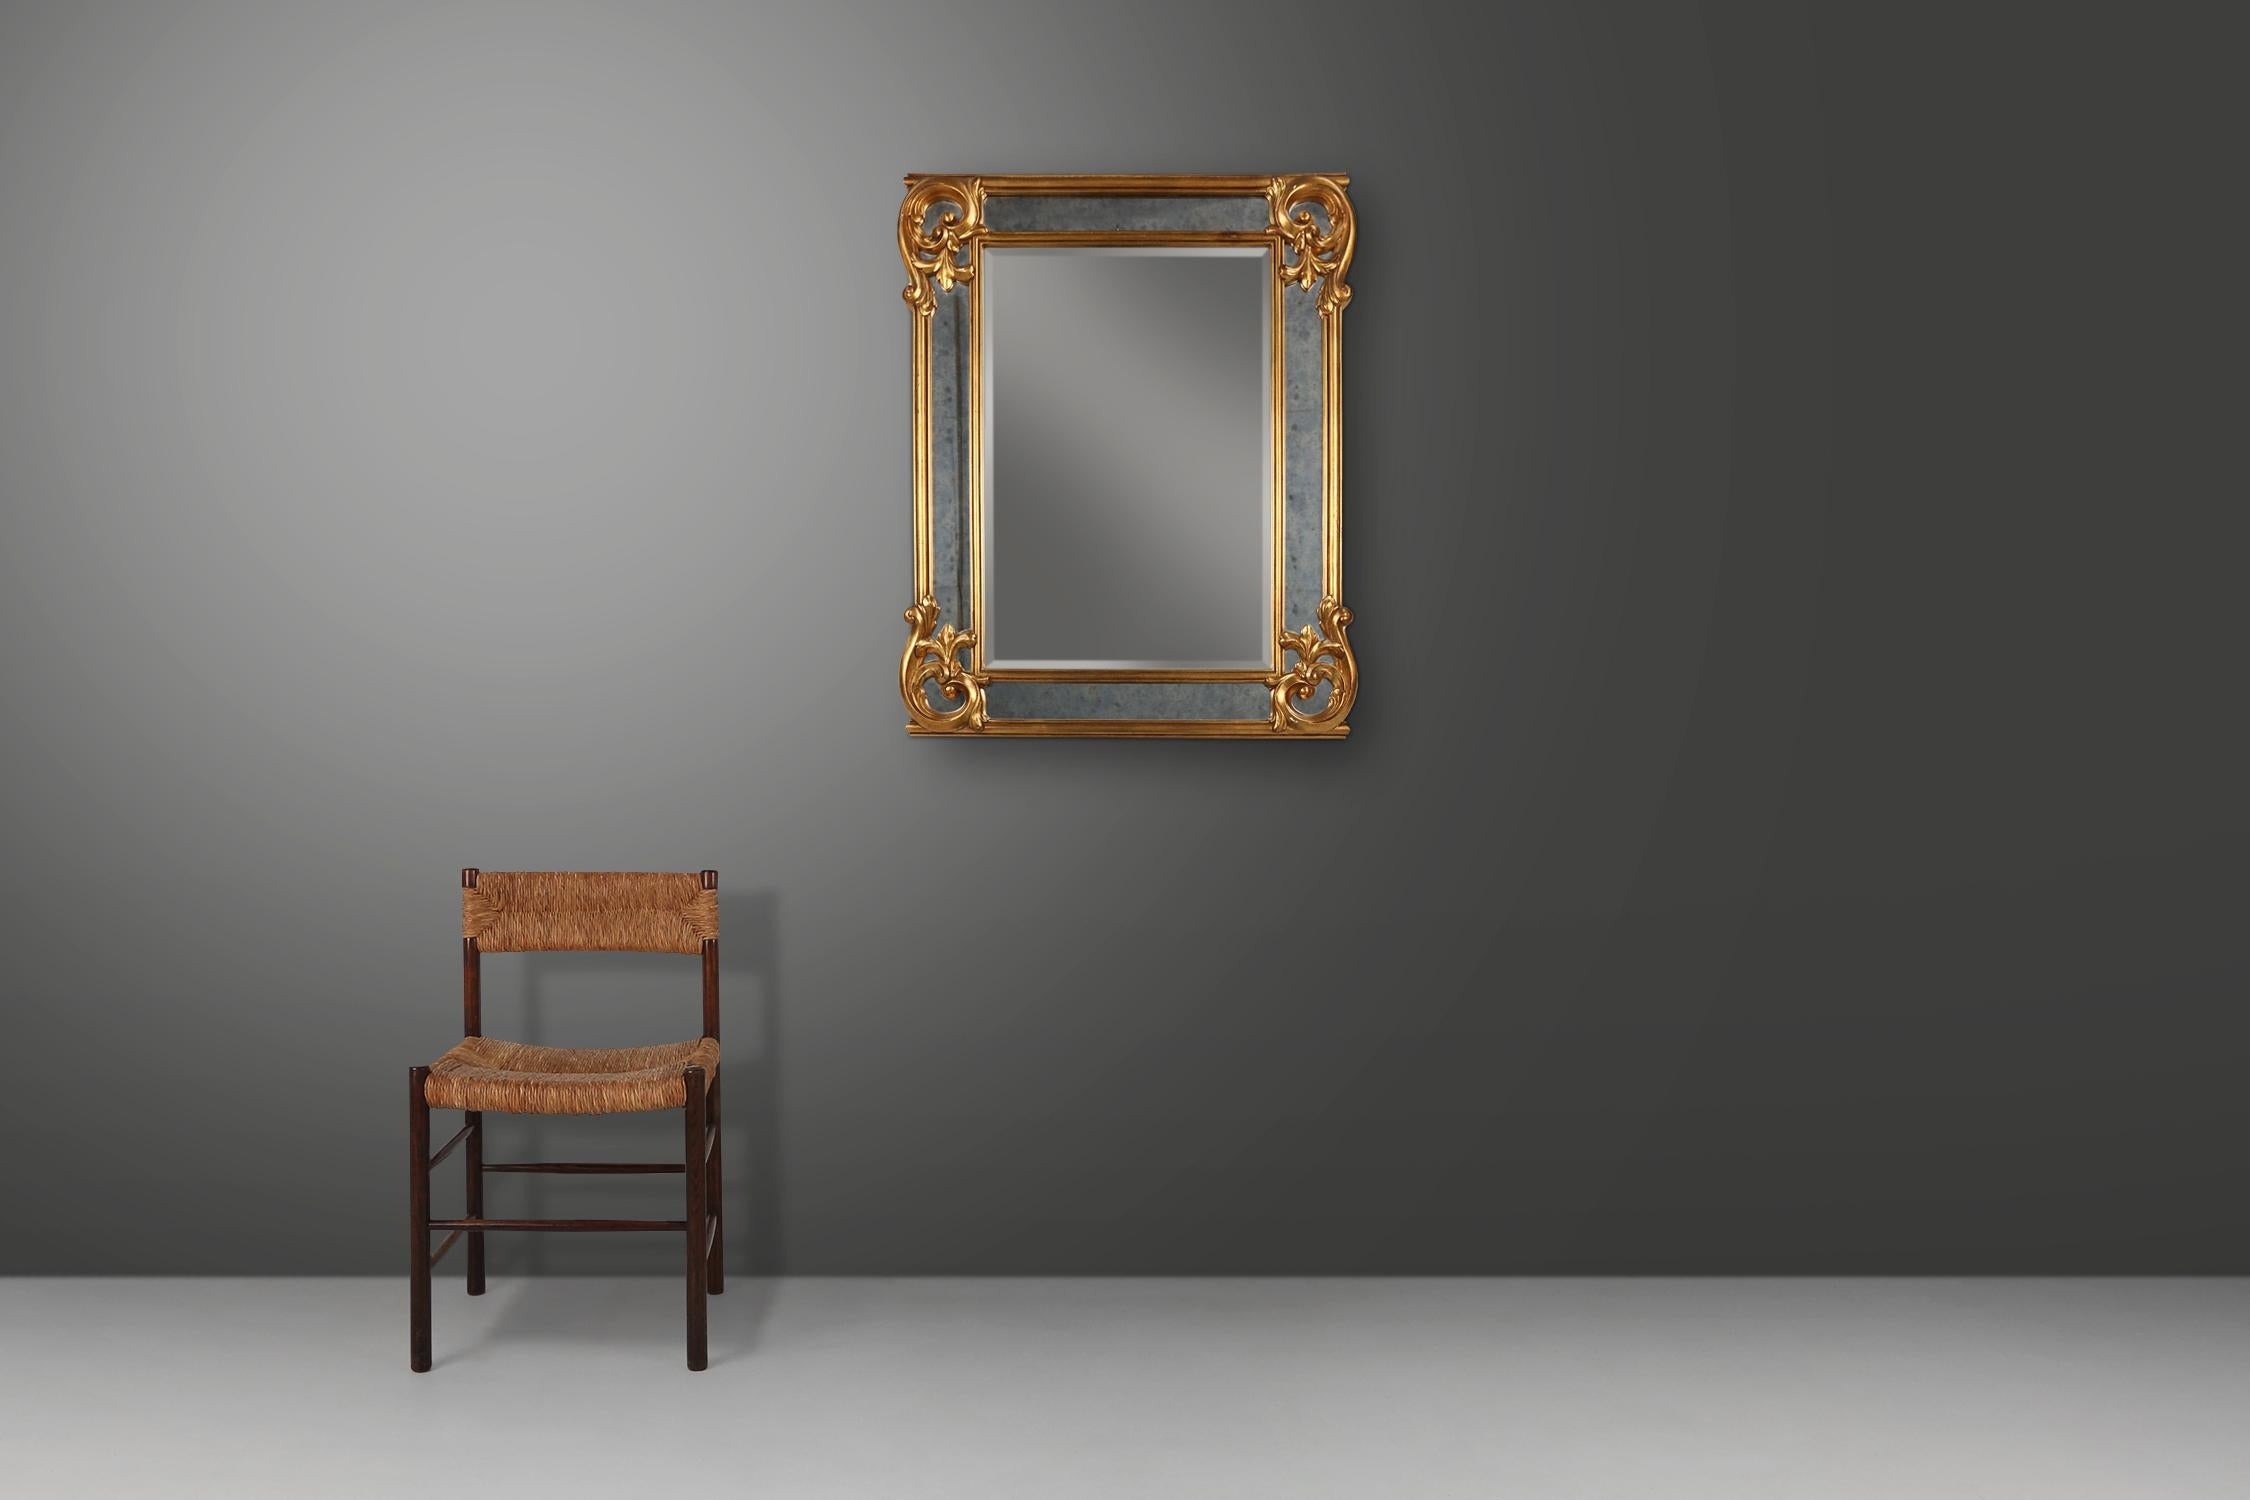 Belgique / 1950 / miroir / résine, miroir et verre fumé miroir verre / mid-century / vintage

Grand miroir mural de style baroque avec cadre extra large, fabriqué en Belgique dans les années 1950. Cette pièce étonnante peut être accrochée en